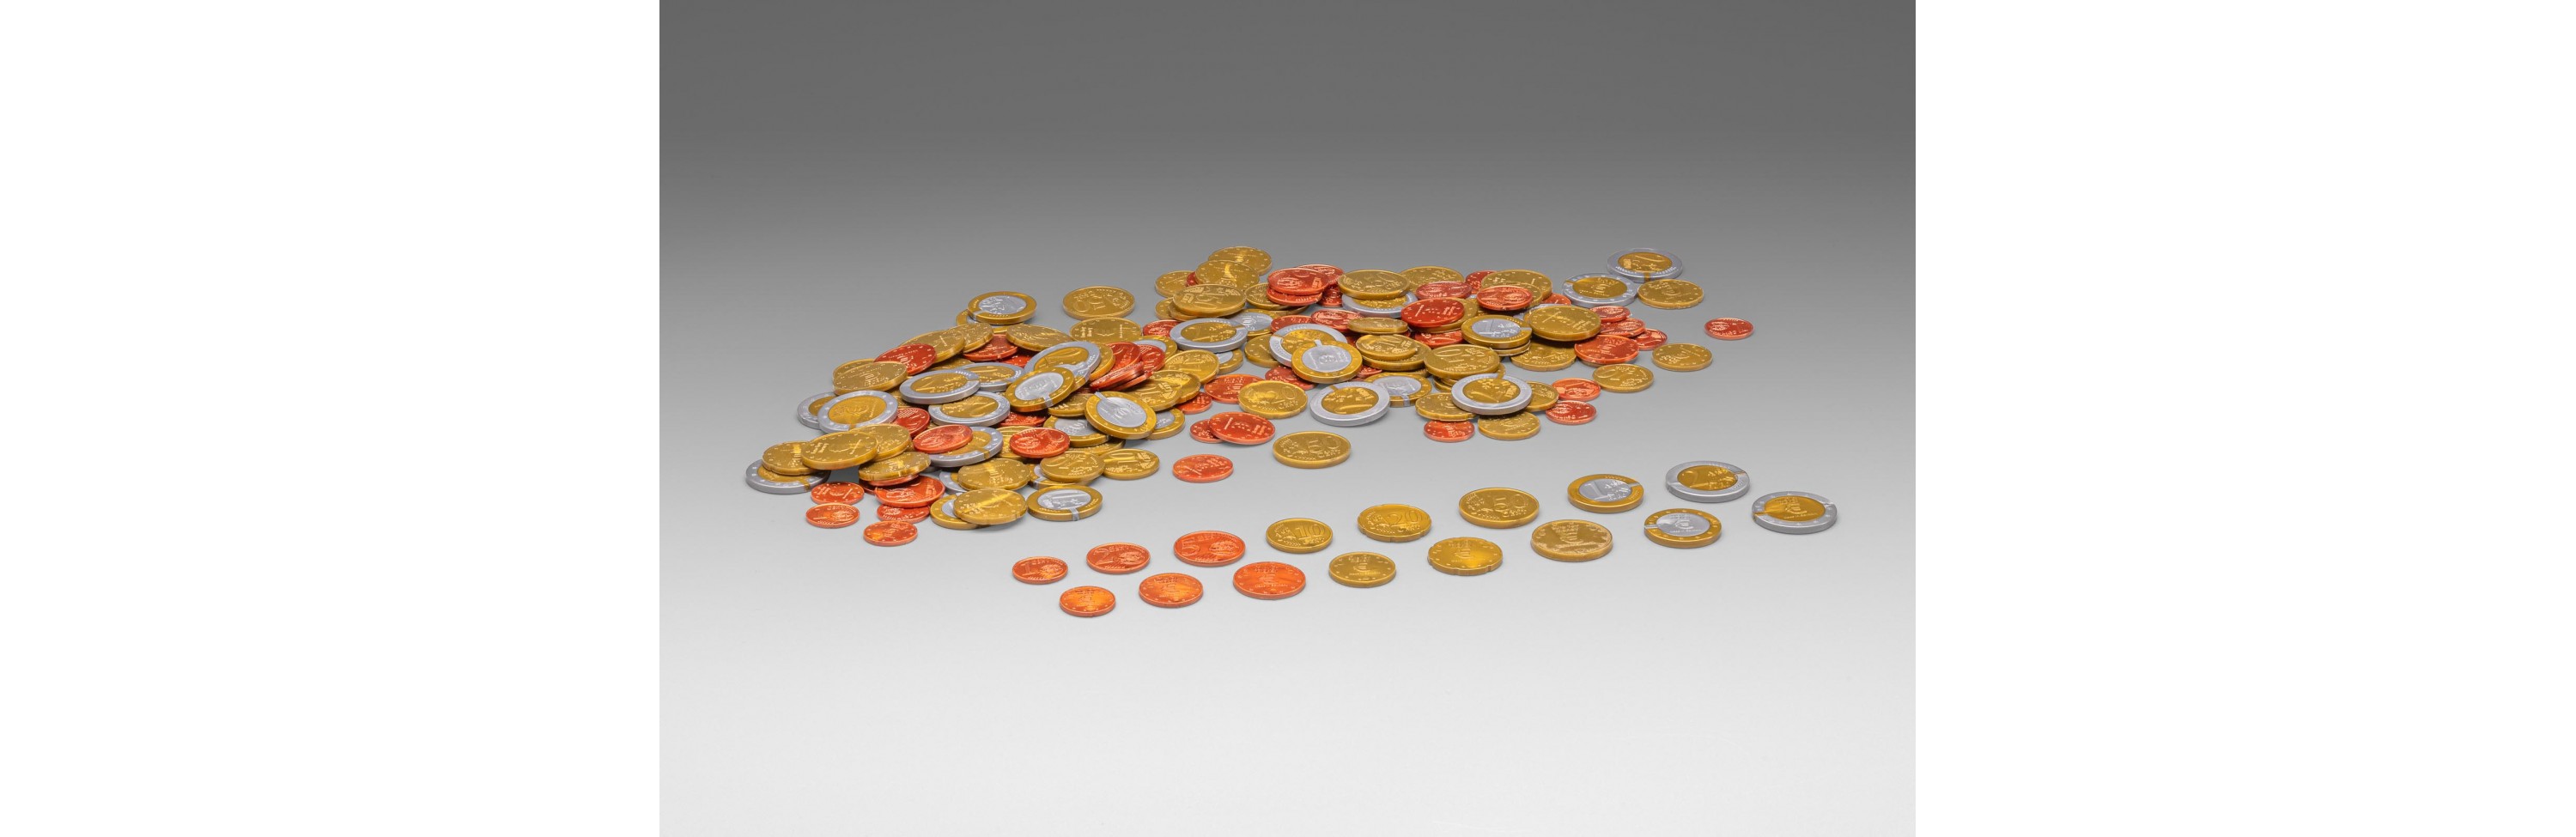 Wissner® aktiv lernen - Spielgeld Münzen großer Satz (160 Münzen) RE-Plastic®